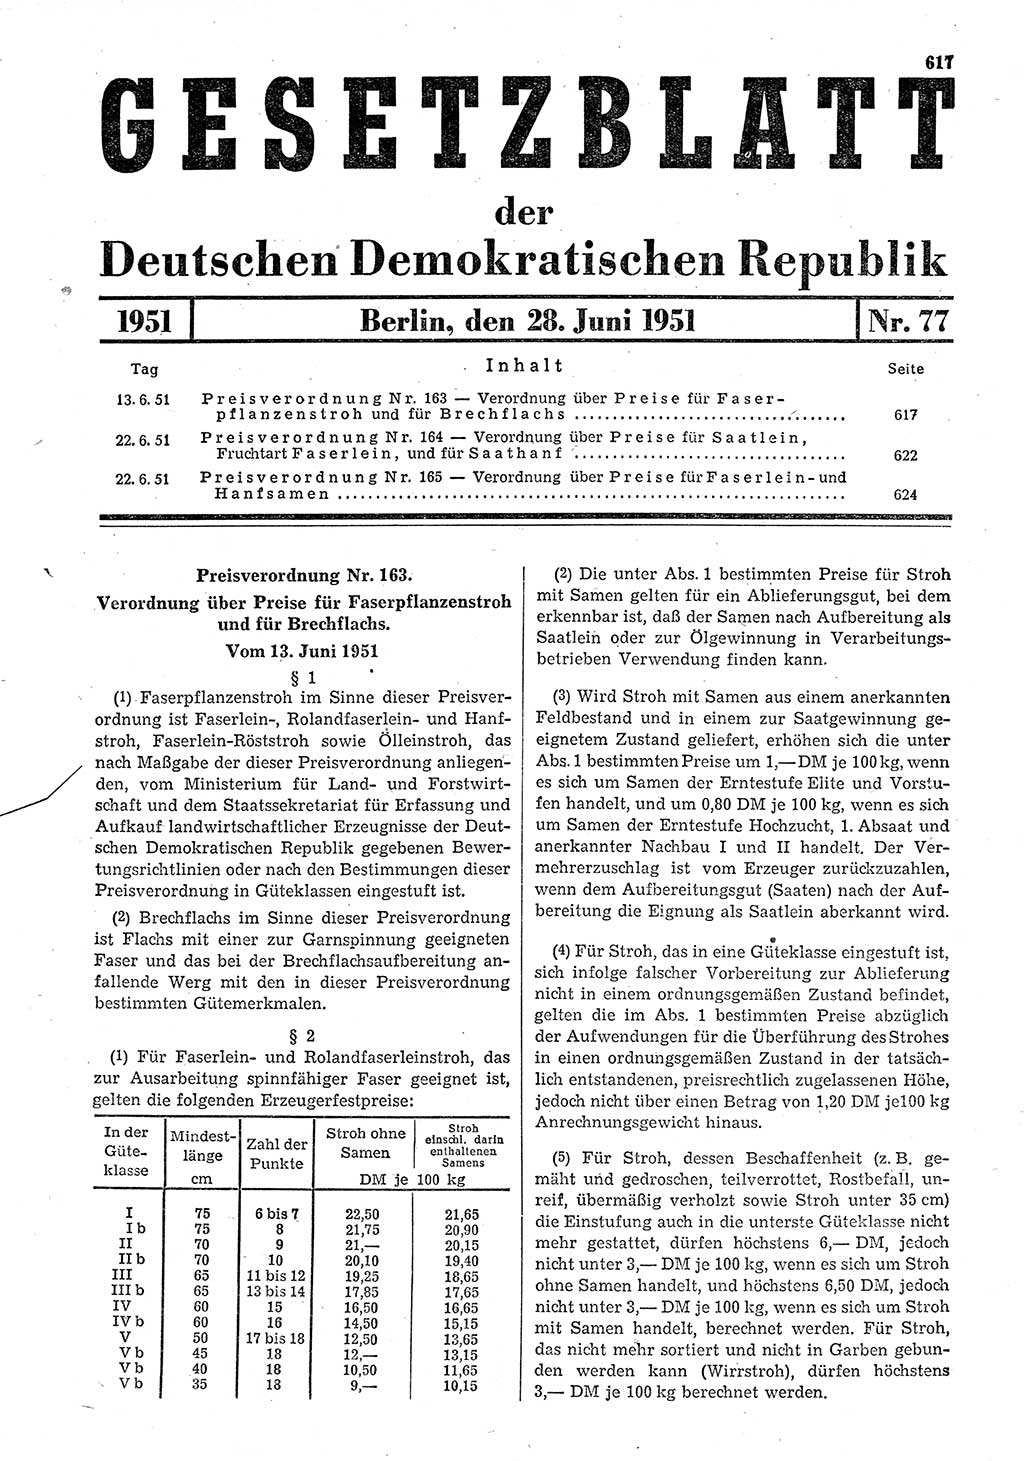 Gesetzblatt (GBl.) der Deutschen Demokratischen Republik (DDR) 1951, Seite 617 (GBl. DDR 1951, S. 617)